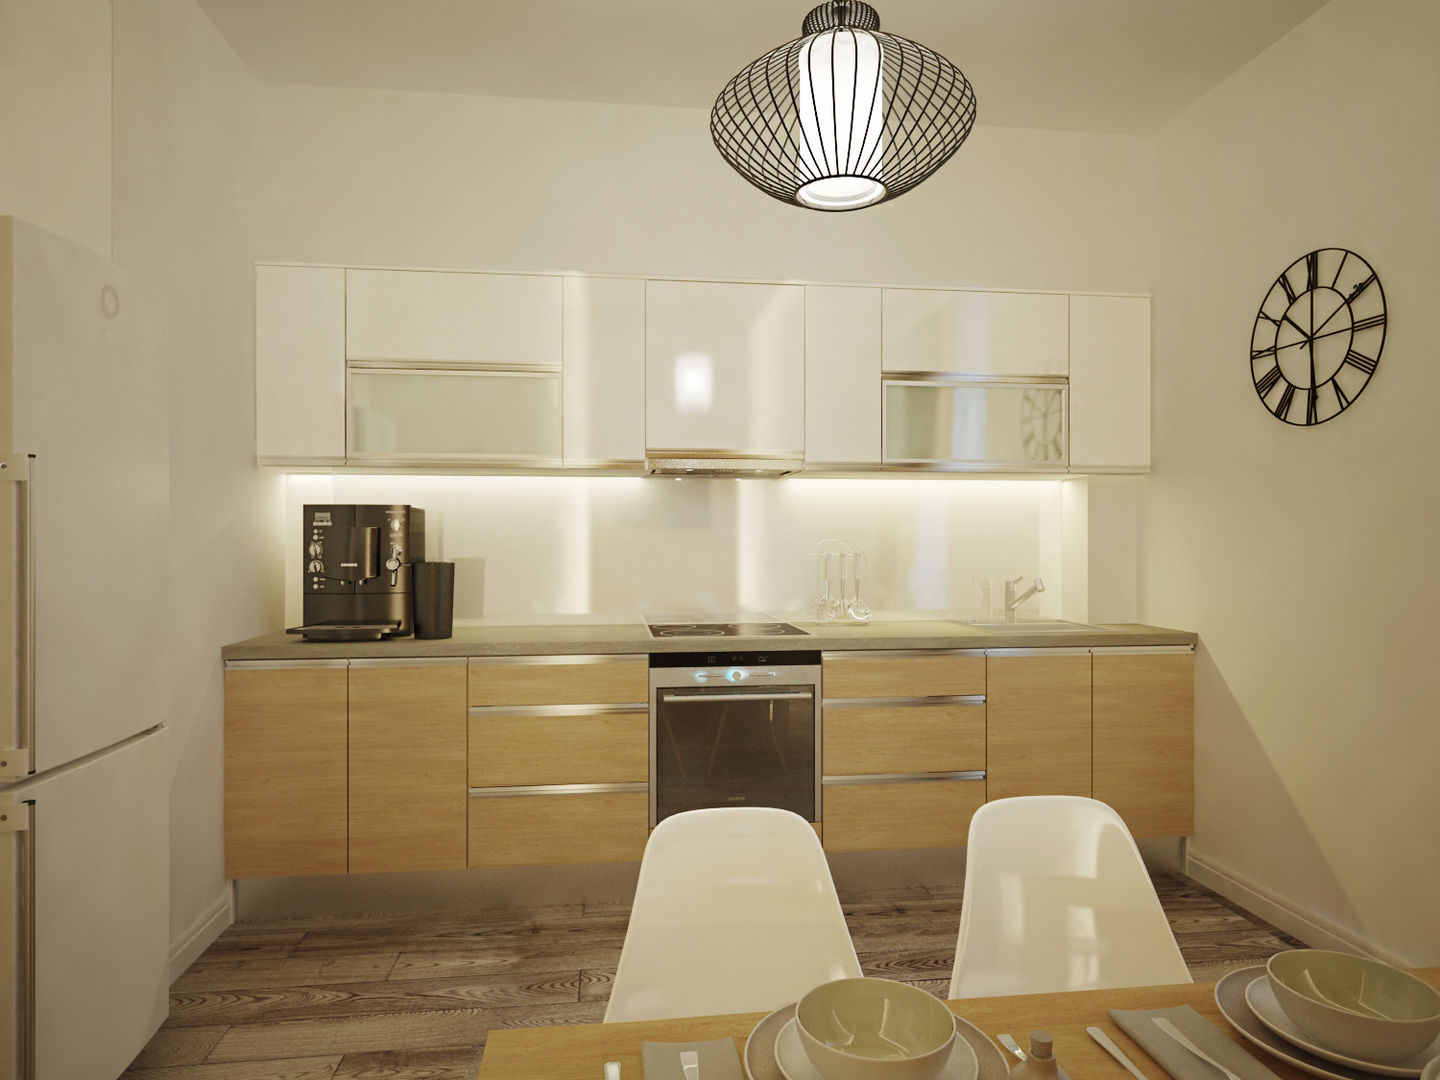 Квартира в современном минимализме, Polovets design studio Polovets design studio Кухня в стиле минимализм